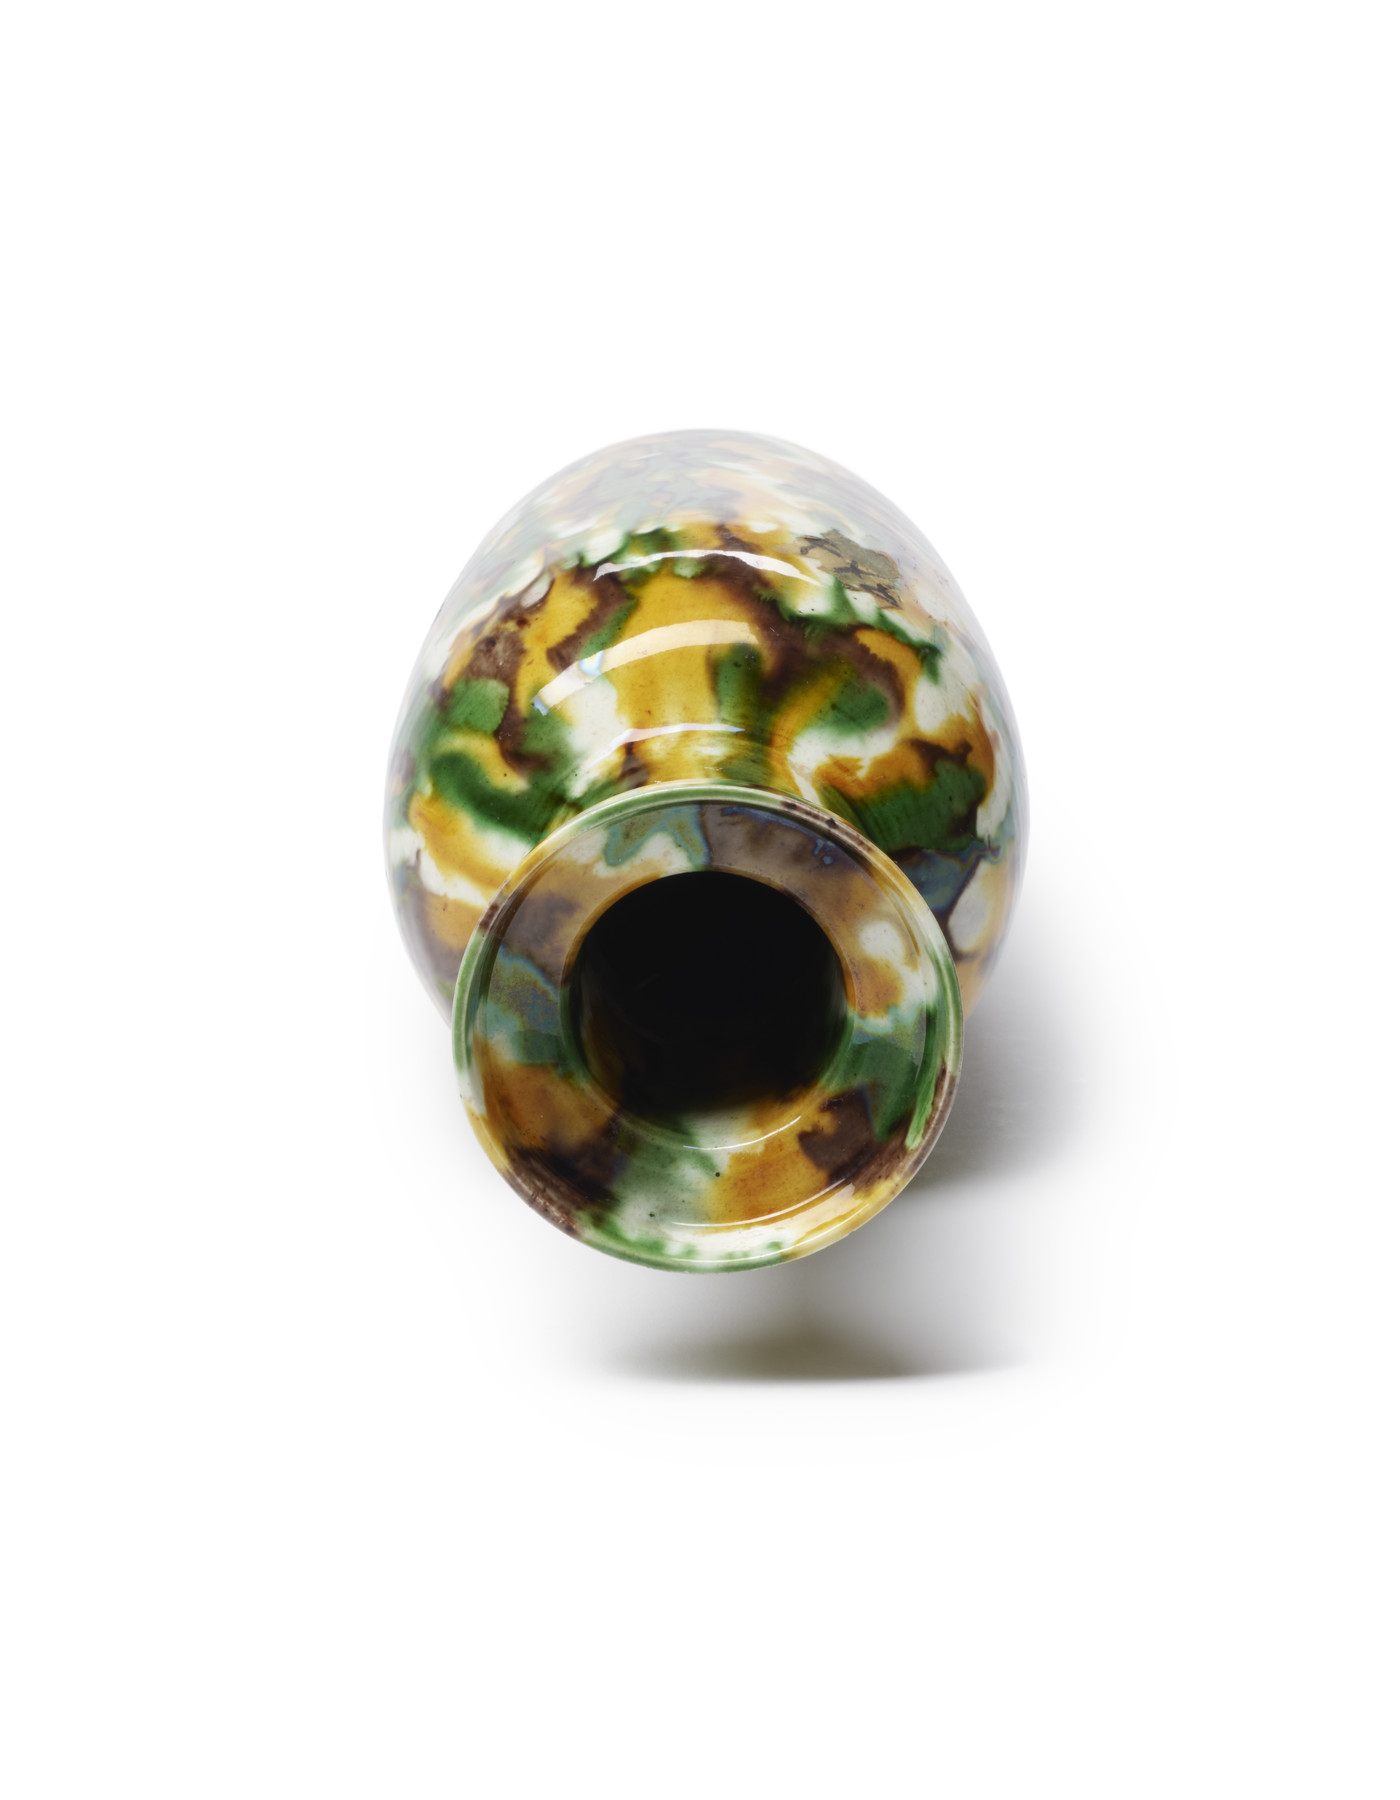 Image for Vase with Tiger Skin Glaze Pattern